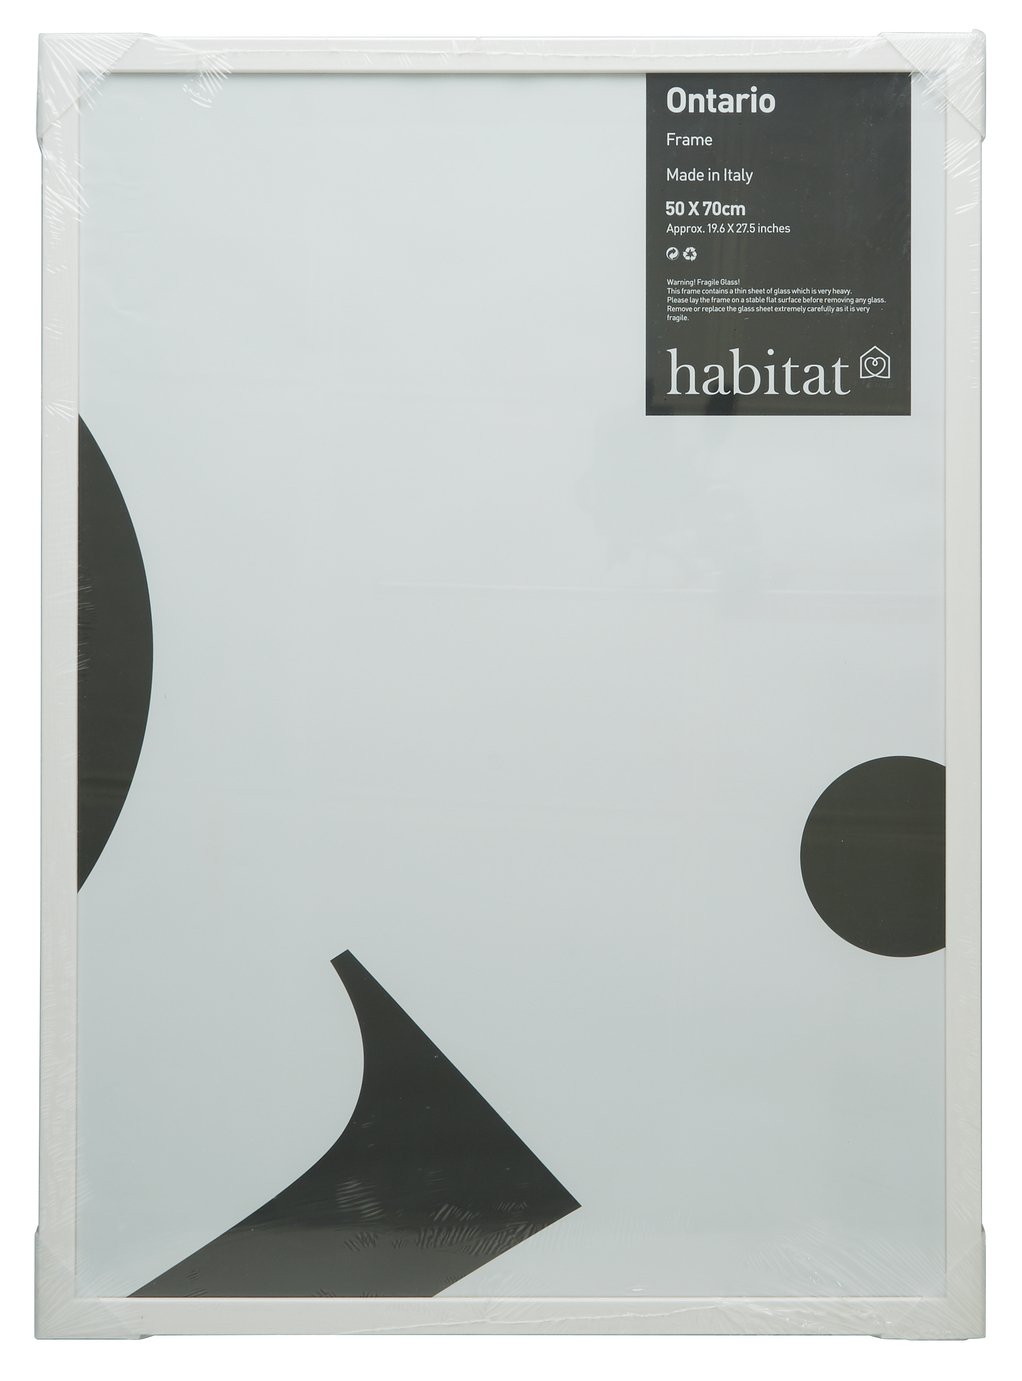 Habitat Ontario 50x70cm Picture Frame - White